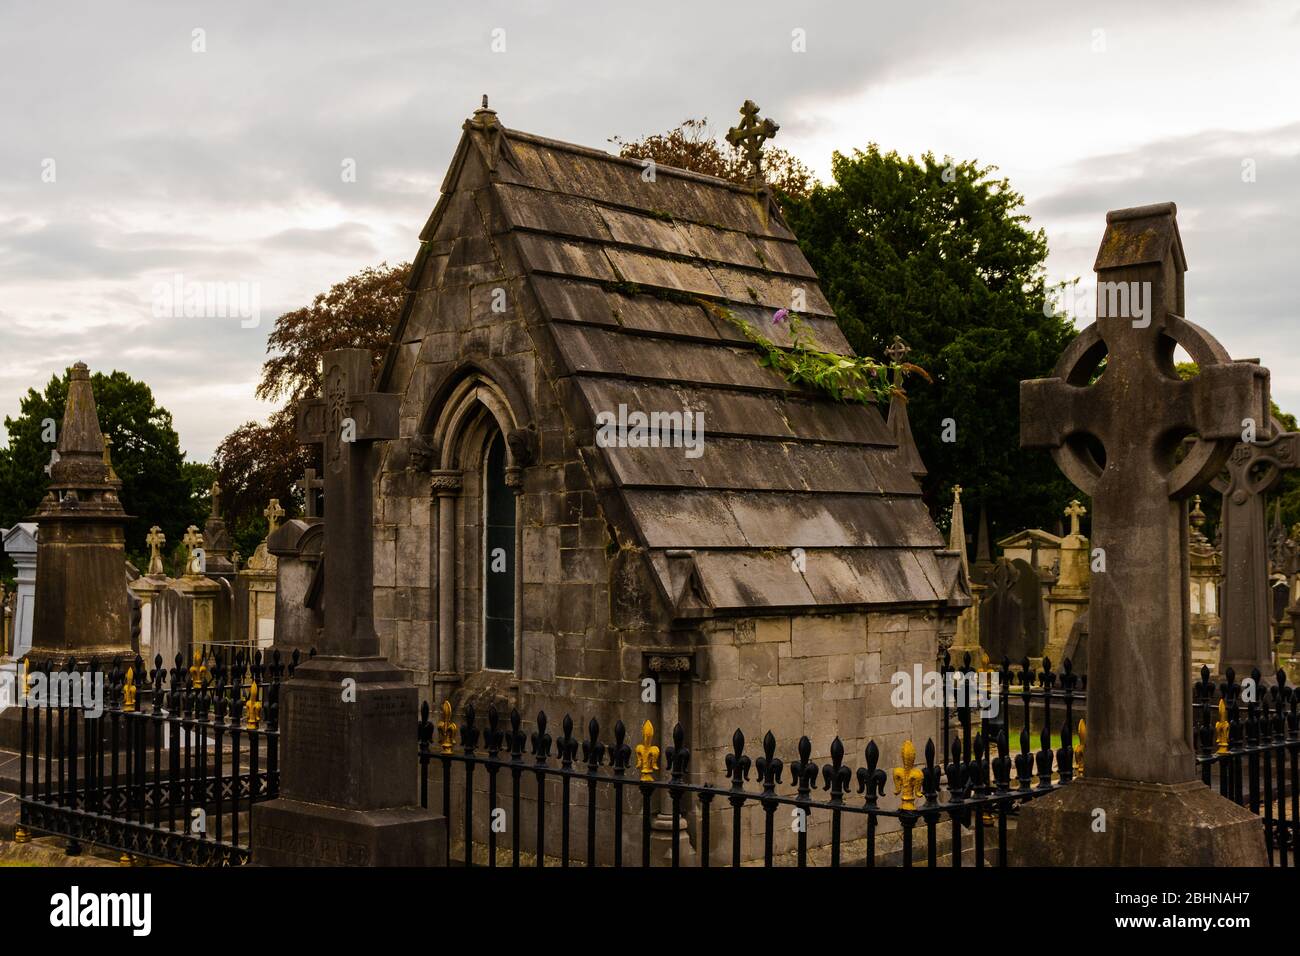 El cementerio Glasnevin fue fundado en 1831 y es el cementerio más grande de Irlanda. Más de un millón de personas fueron enterradas aquí. Foto de stock